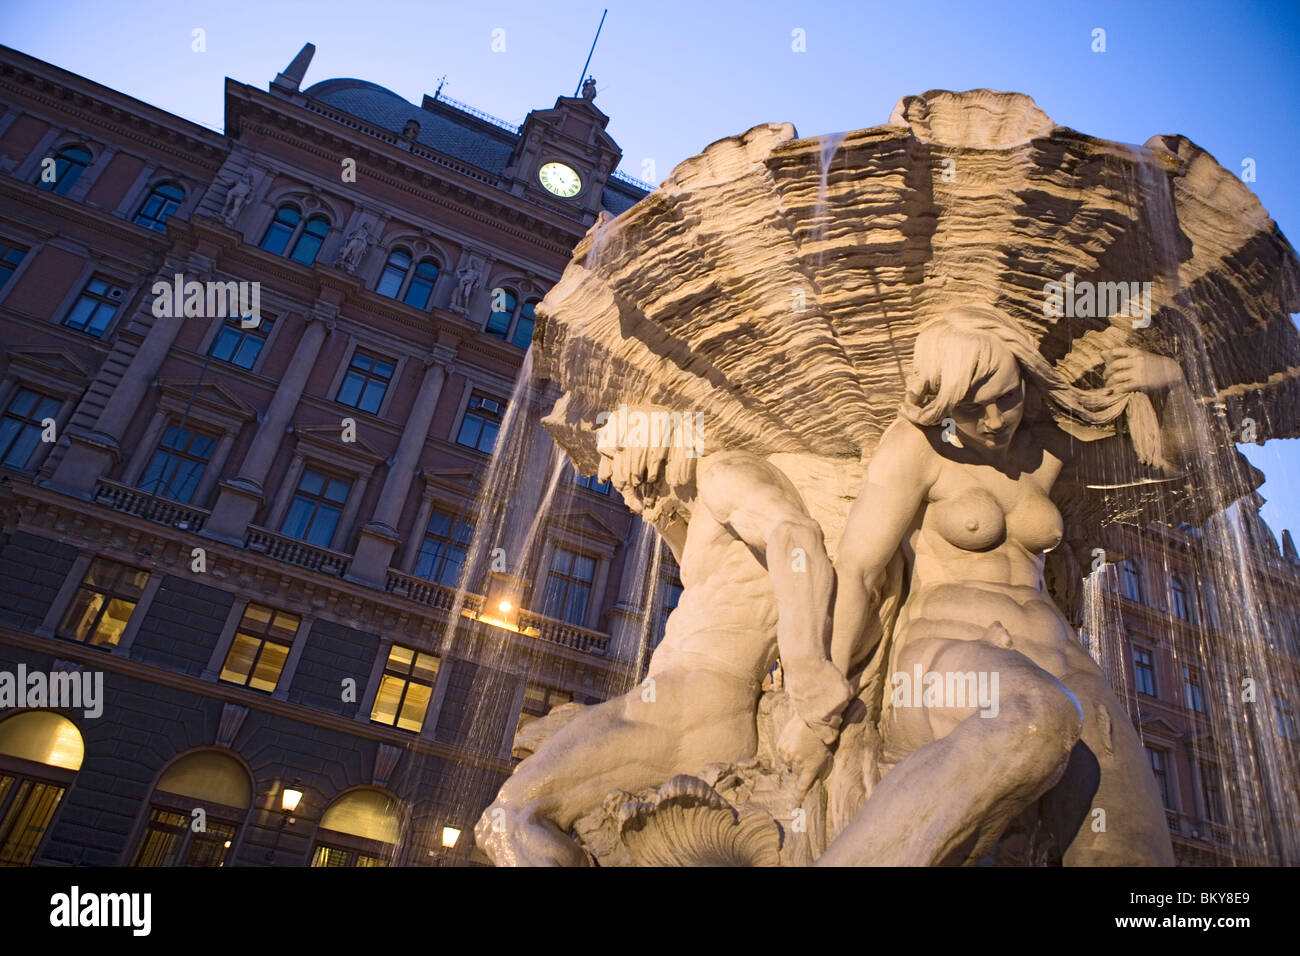 Fontaine sur la Piazza Vittorio Veneto, Trieste, Frioul-Vénétie Julienne, Italie, Italie supérieur Banque D'Images